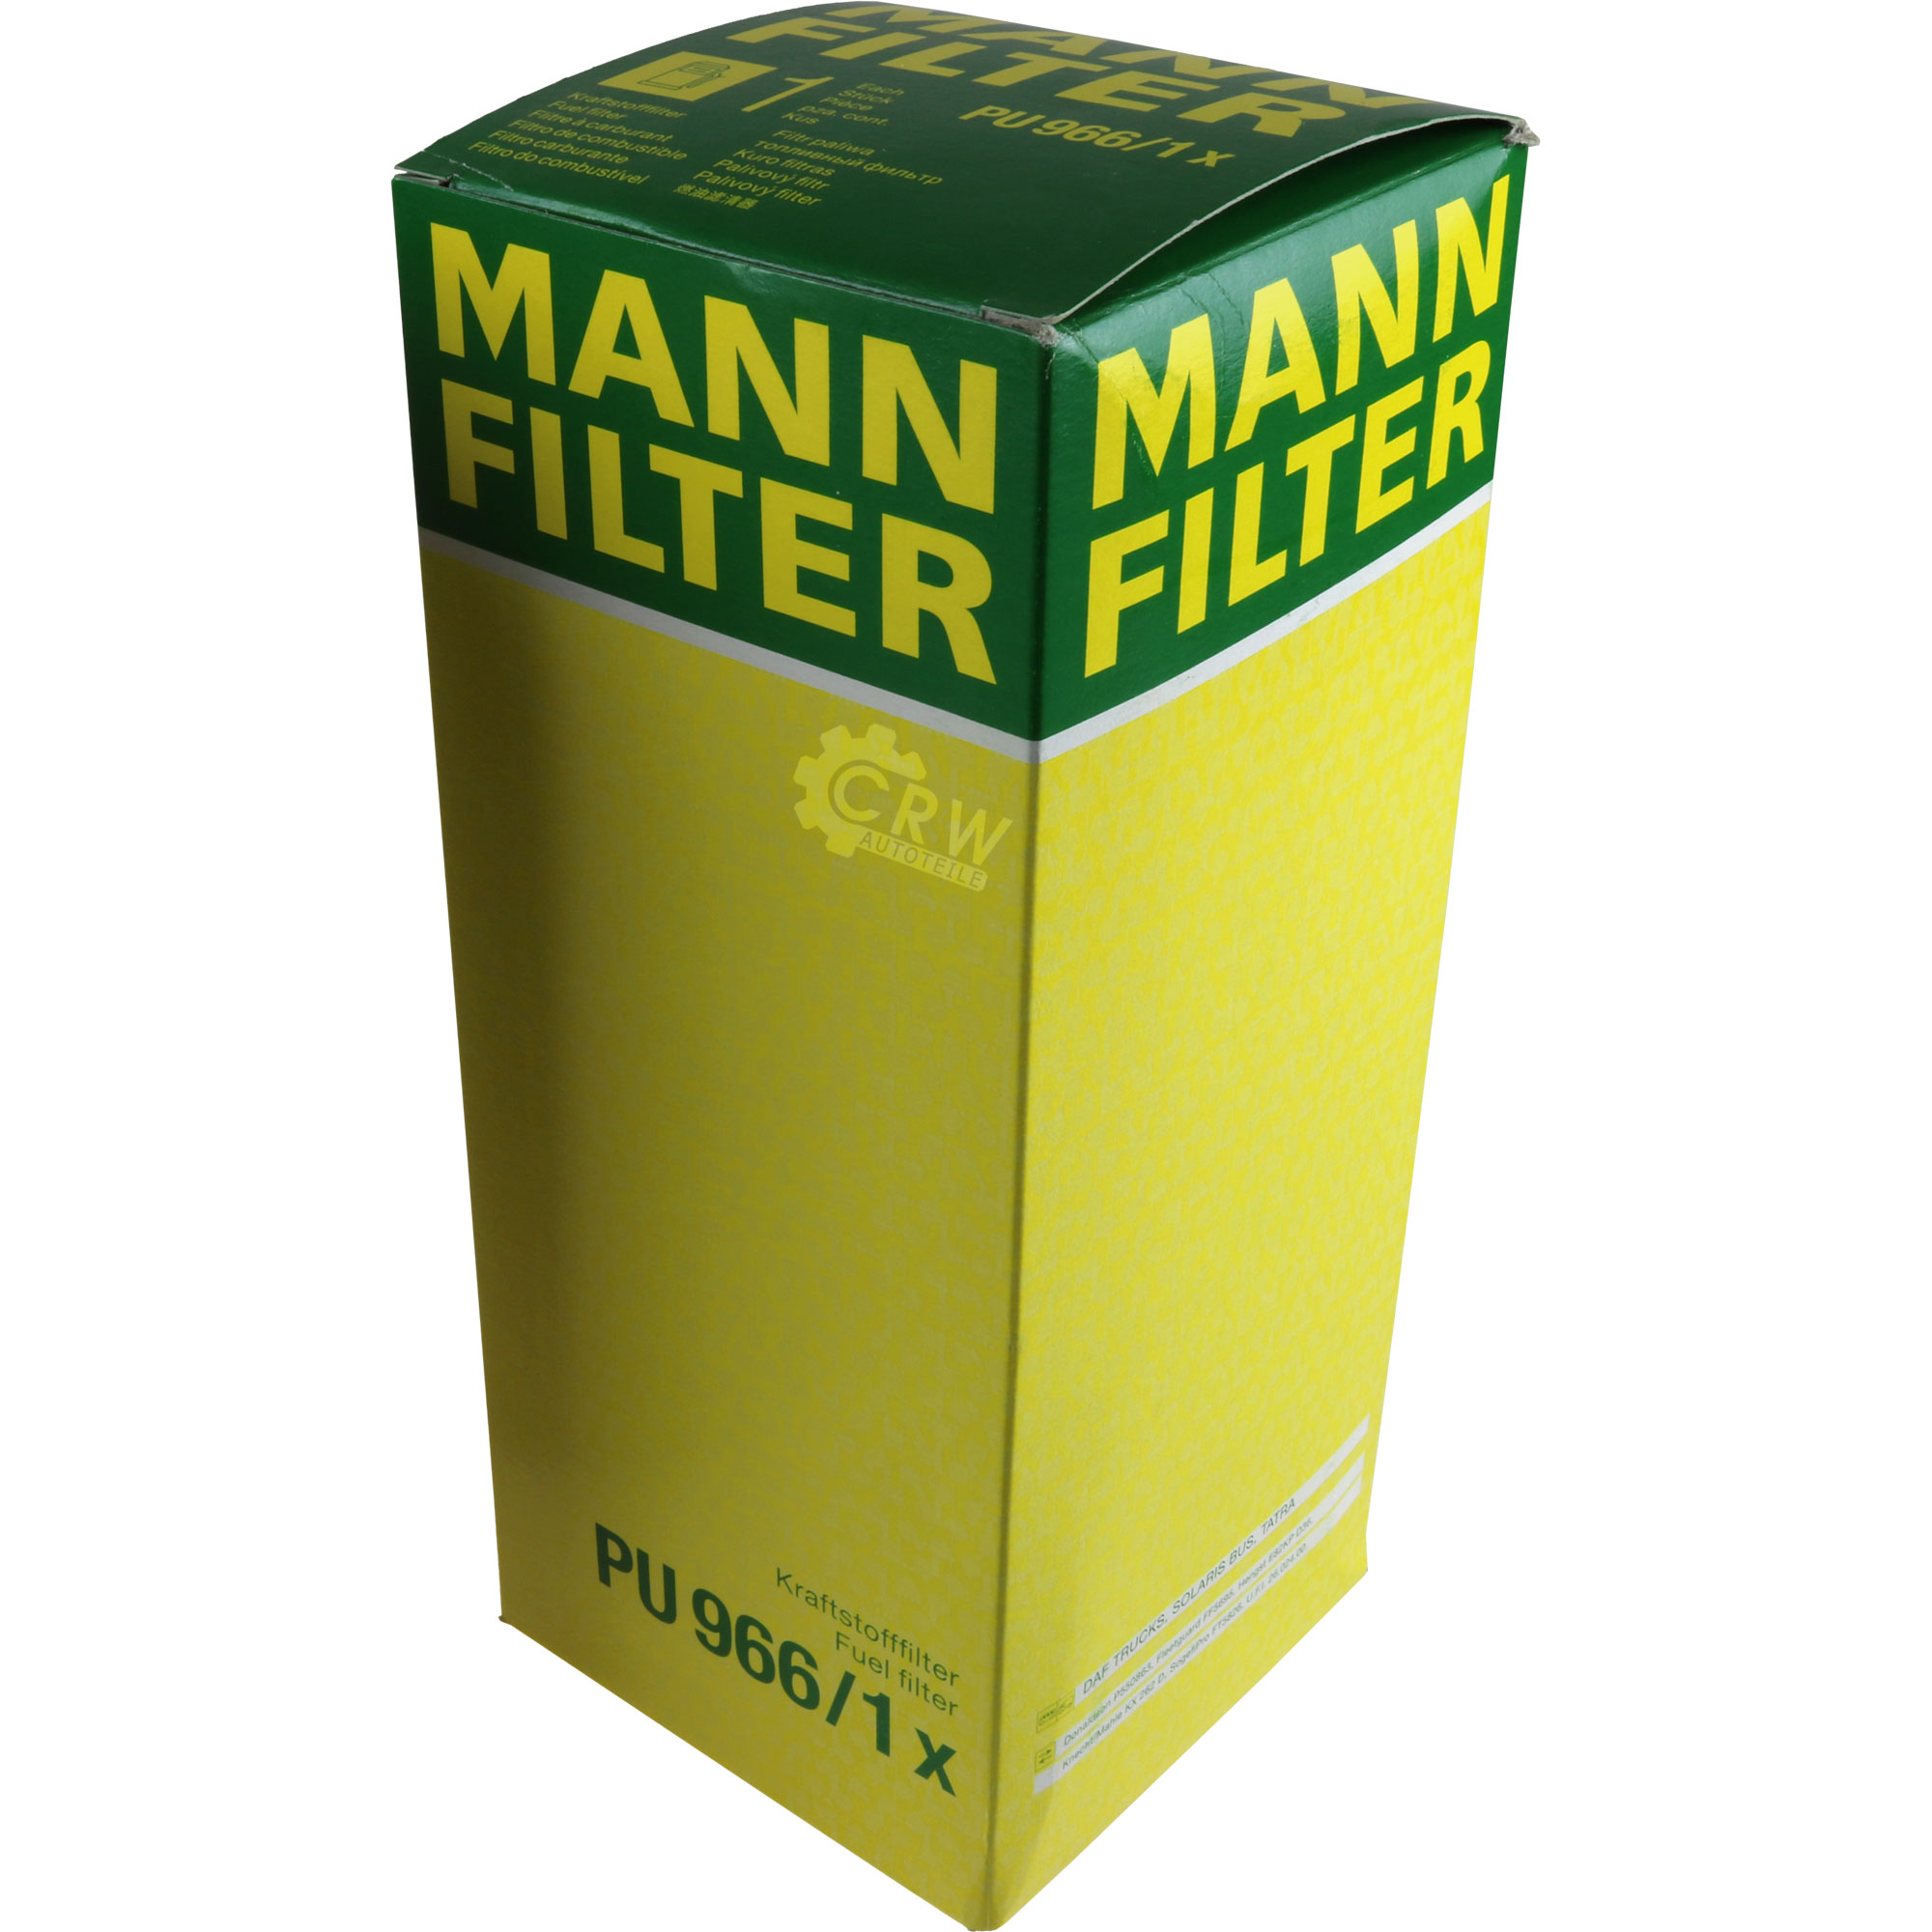 MANN-FILTER Kraftstofffilter PU 966/1 x Fuel Filter